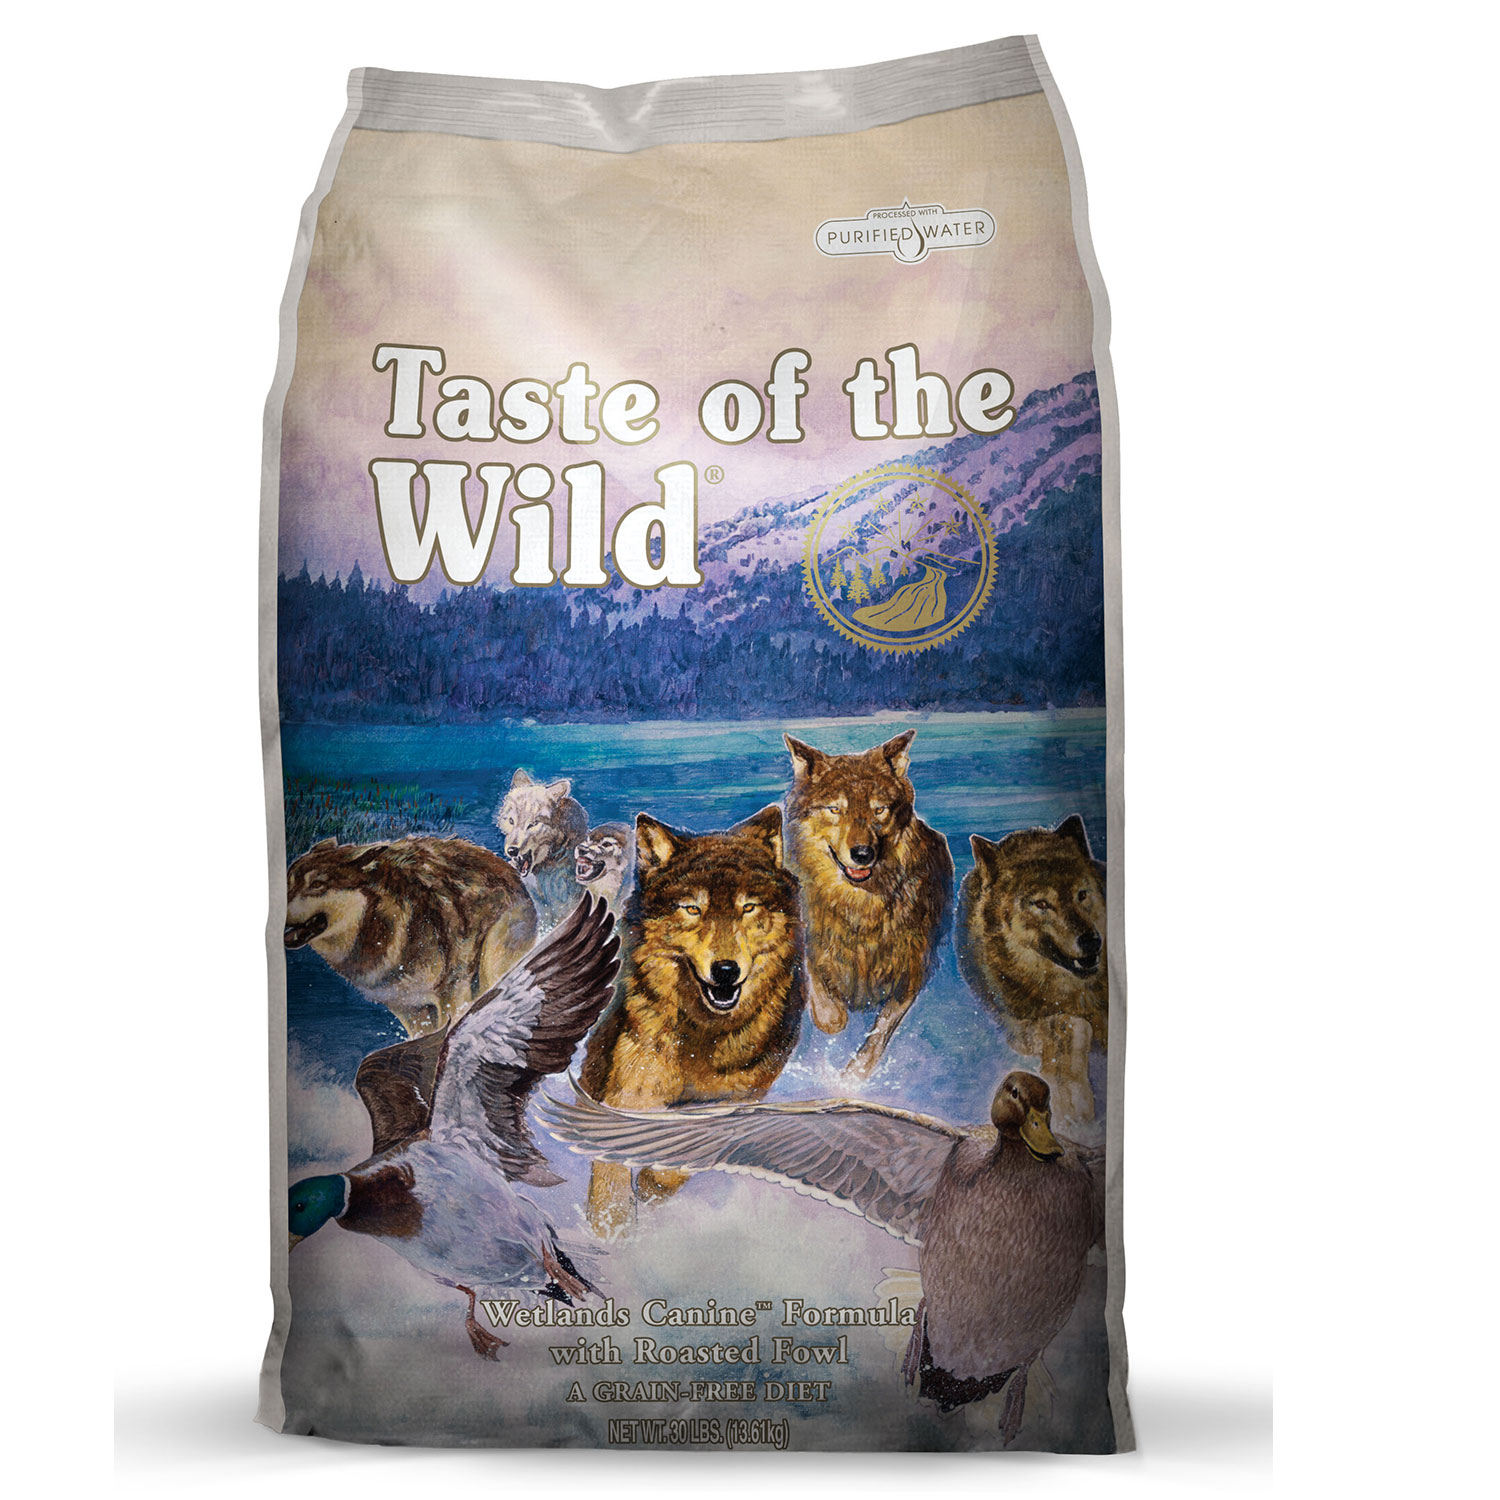 Tasste Of The Wild Wetlands Canine Formula 2.27G(Dry Food)